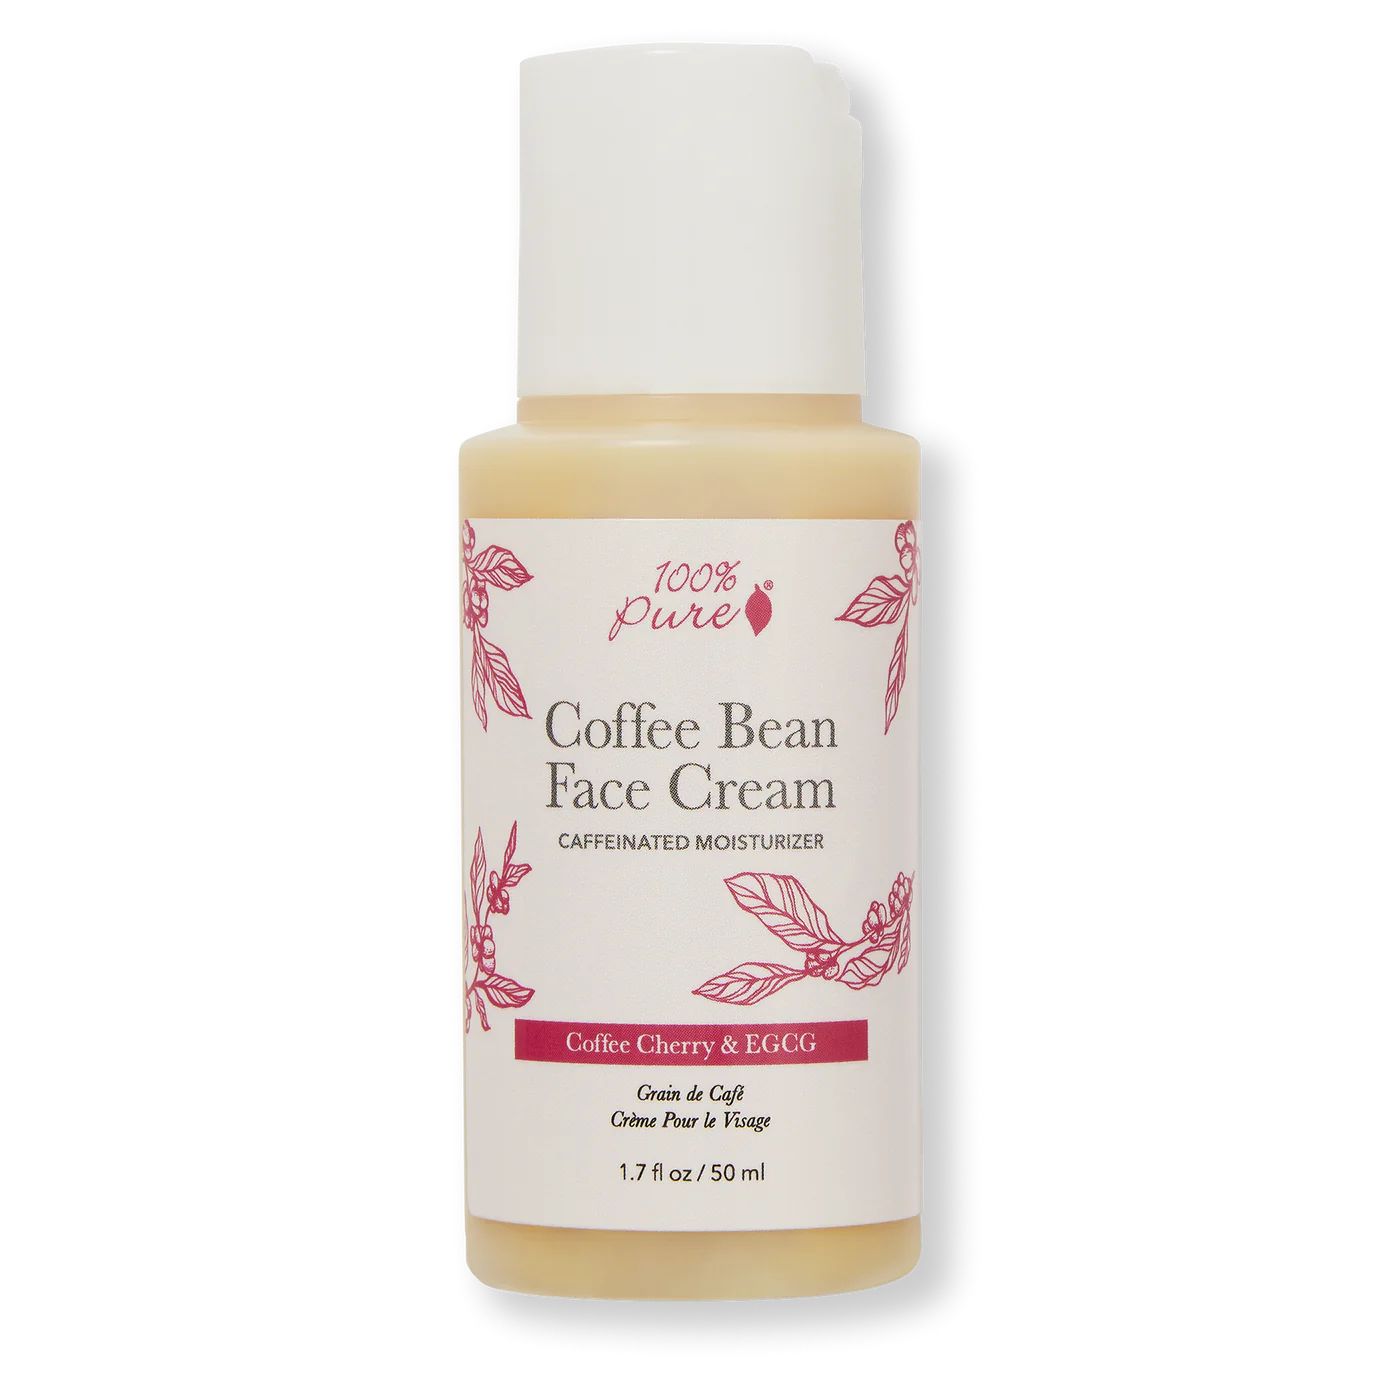 Coffee Bean Face Cream | 100% PURE